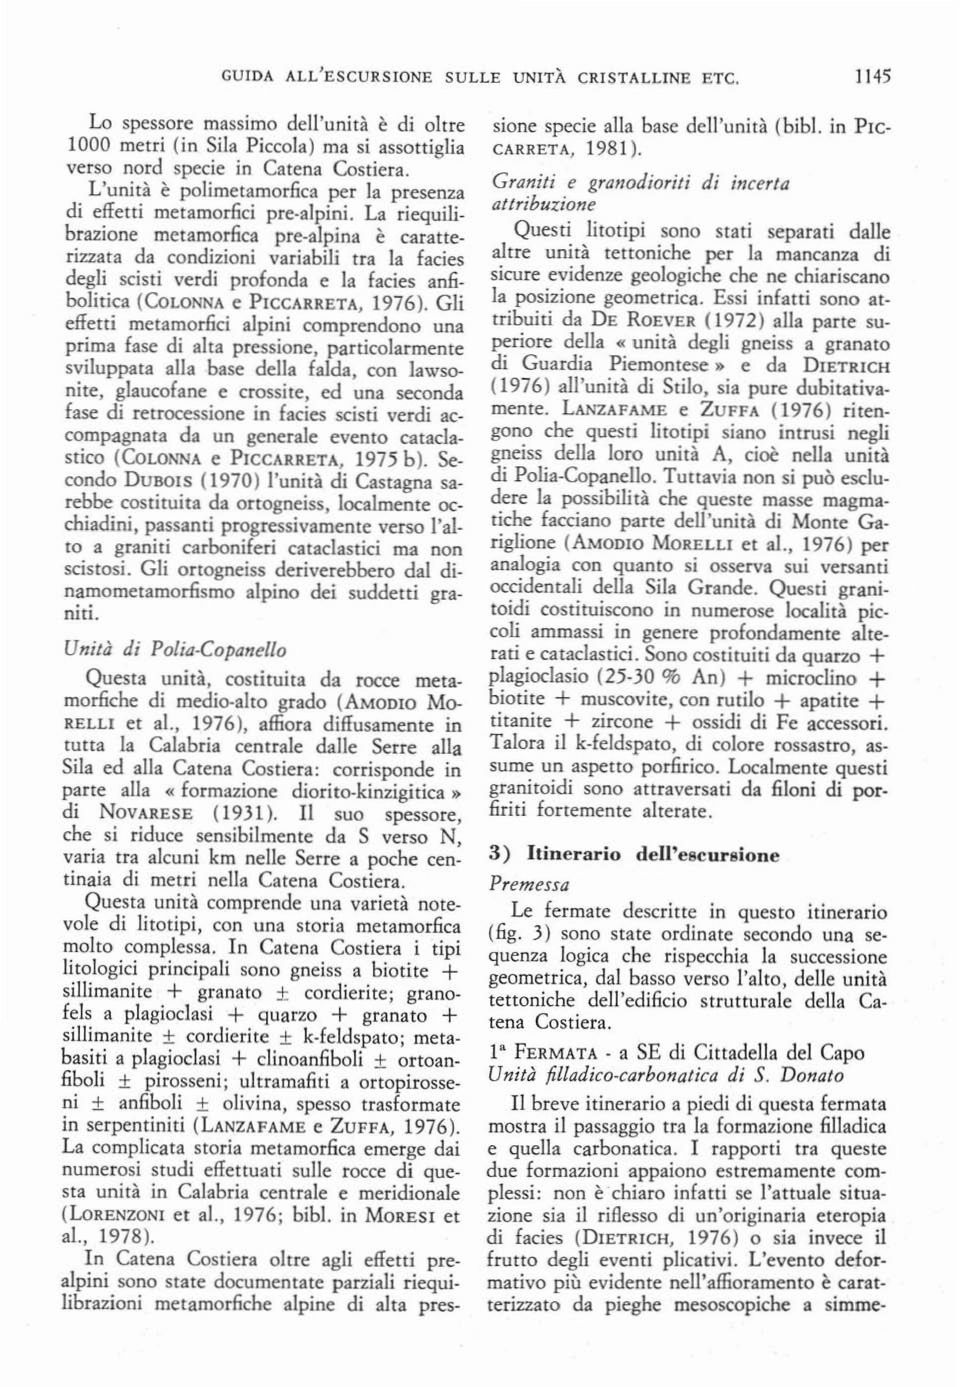 alpina è caratterizzata da condizioni variabili Ira la facies degli scisti verdi profonda e la facies an6. bolitica (CoLONNA e PICCARRETA, 1976).